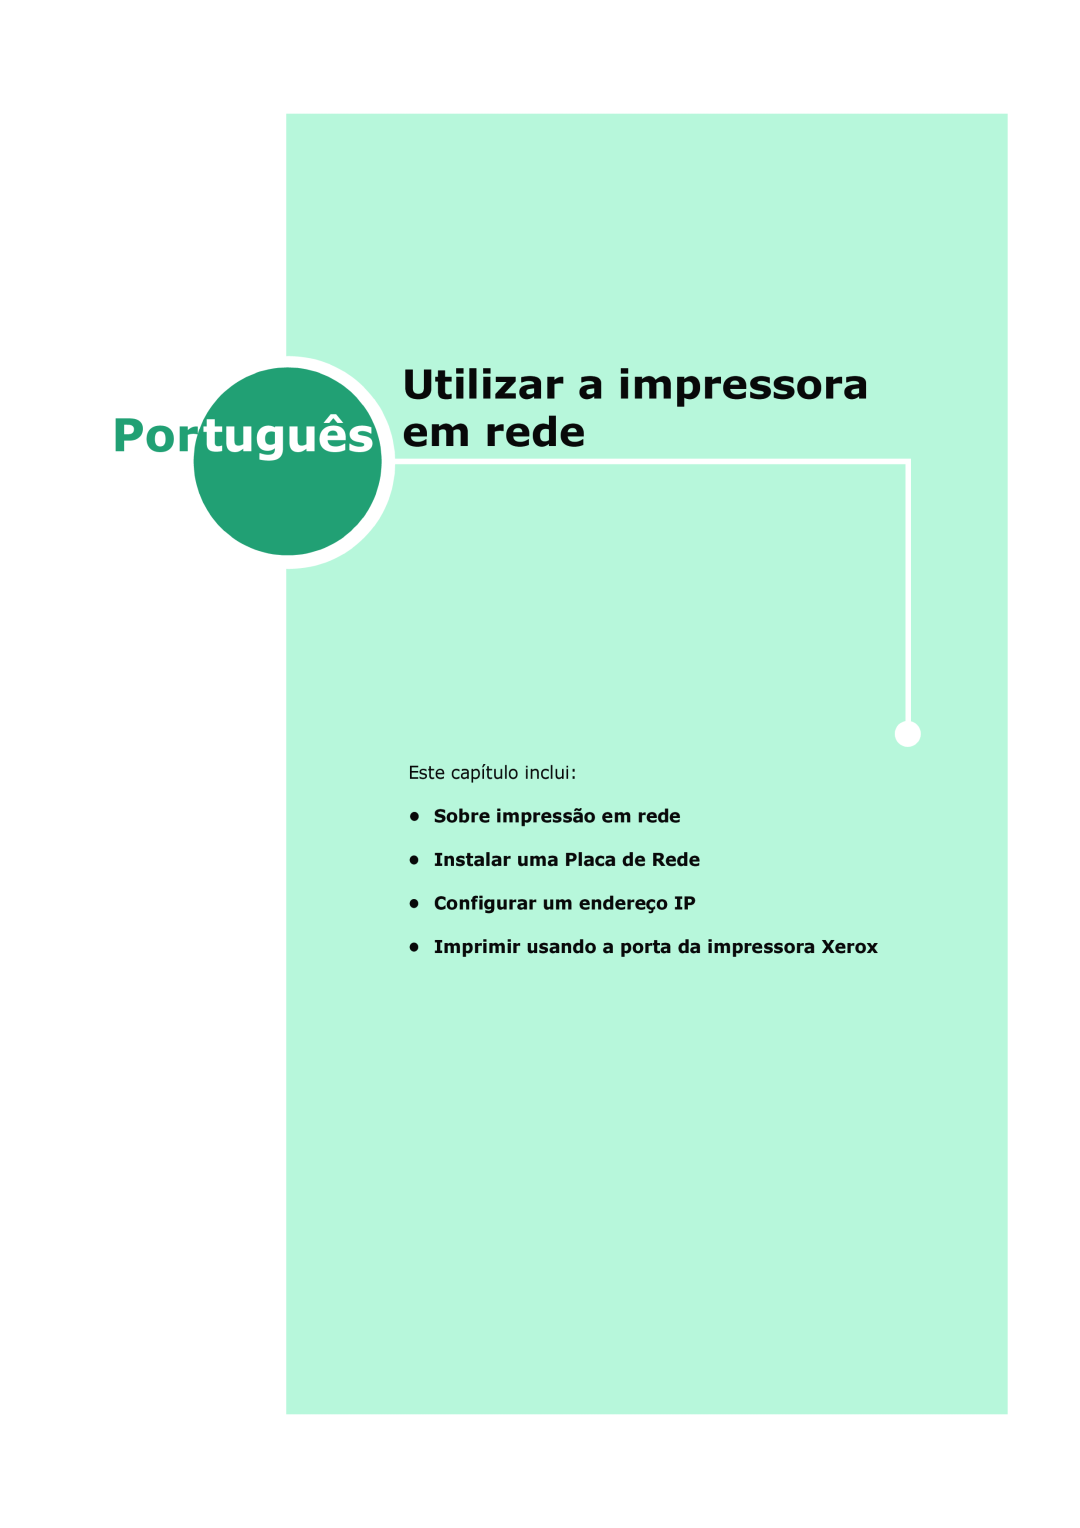 Xerox 3150 manual Utilizar a impressora, Este capítulo inclui Sobre impressão em rede, Português em rede 